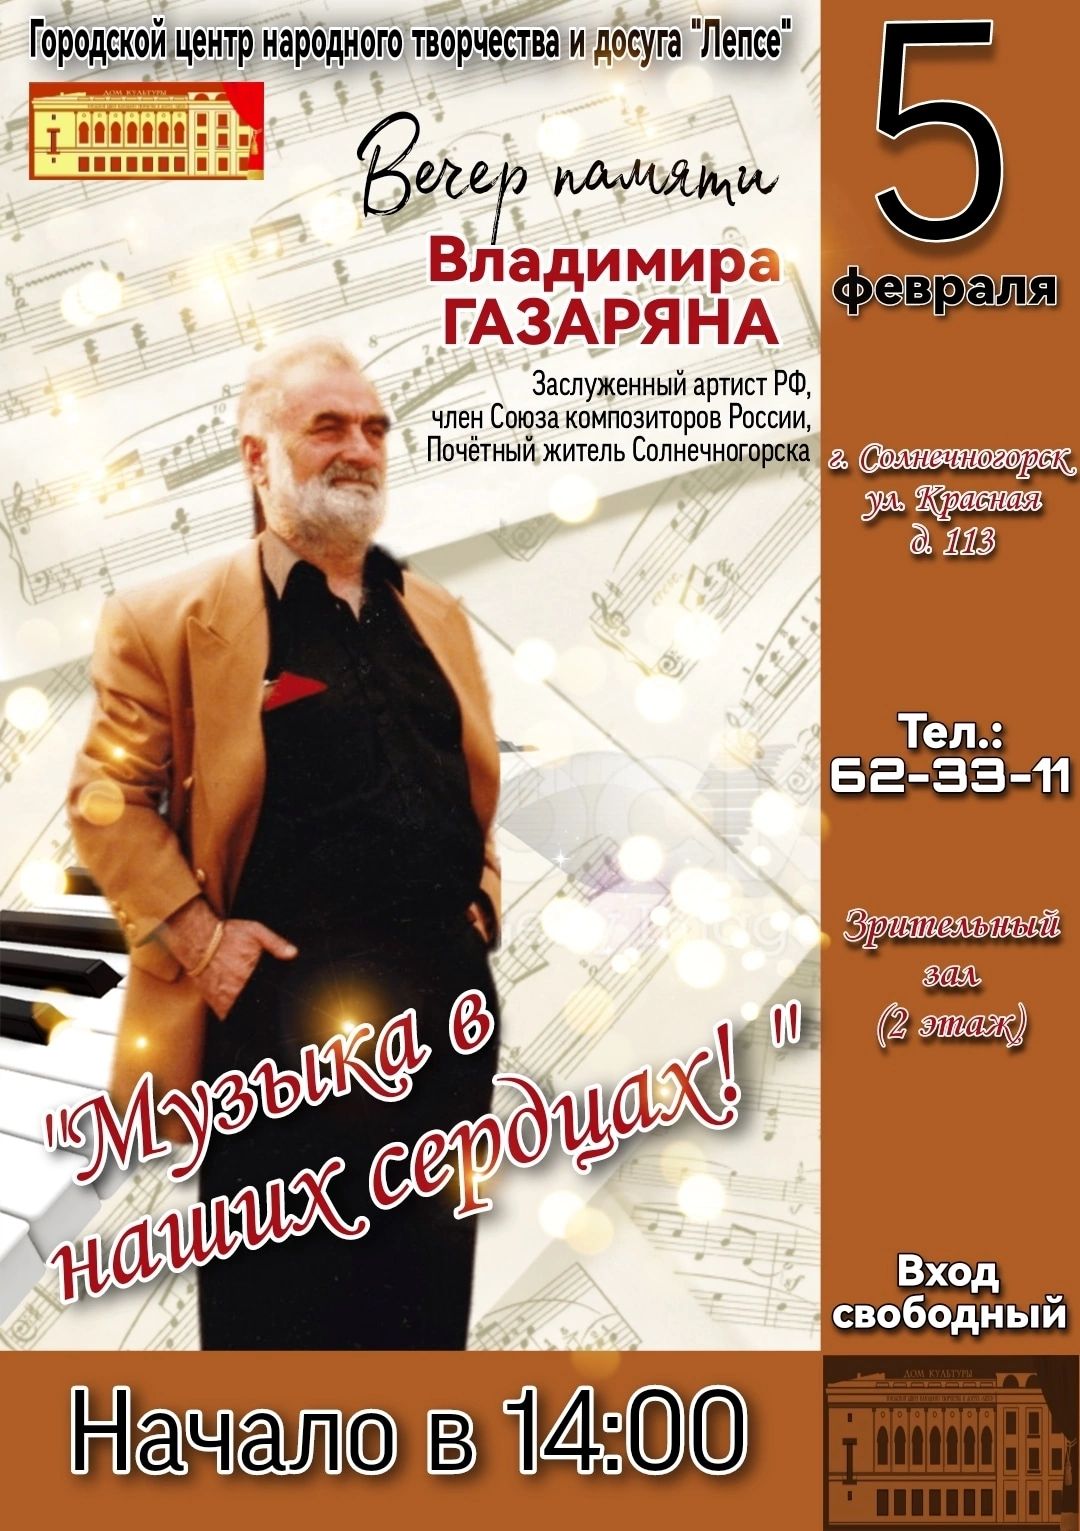 Вечер памяти композитора Владимира Газаряна